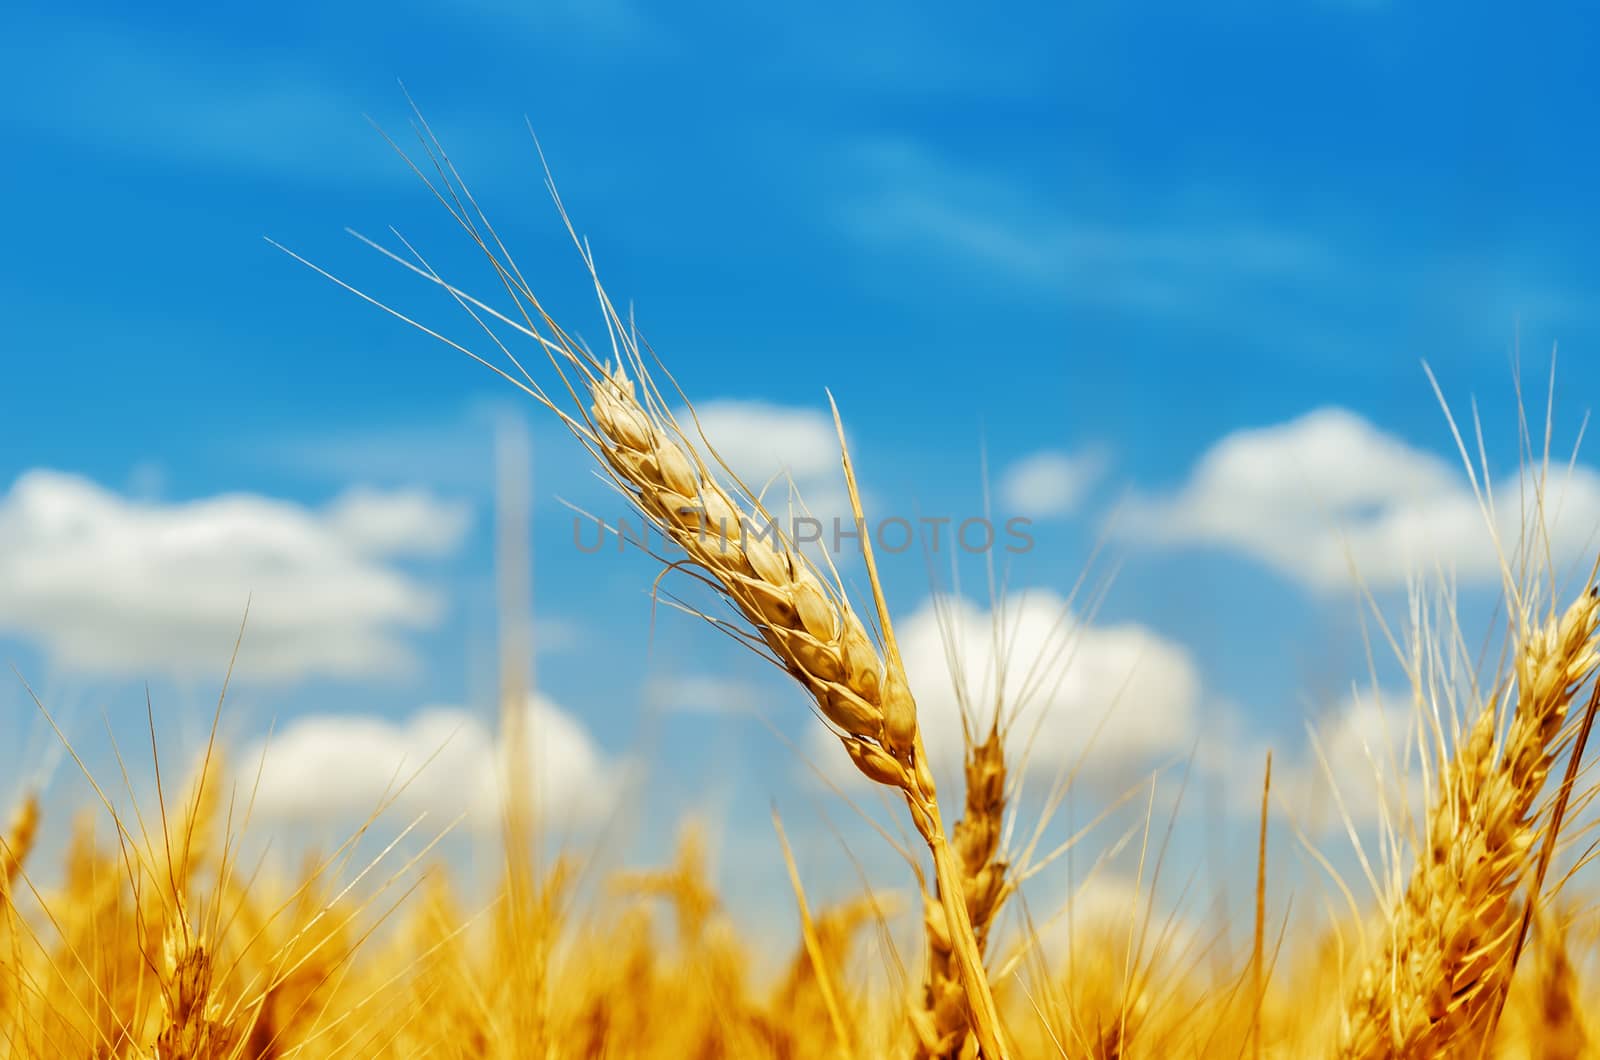 golden barley on field under blue sky by mycola